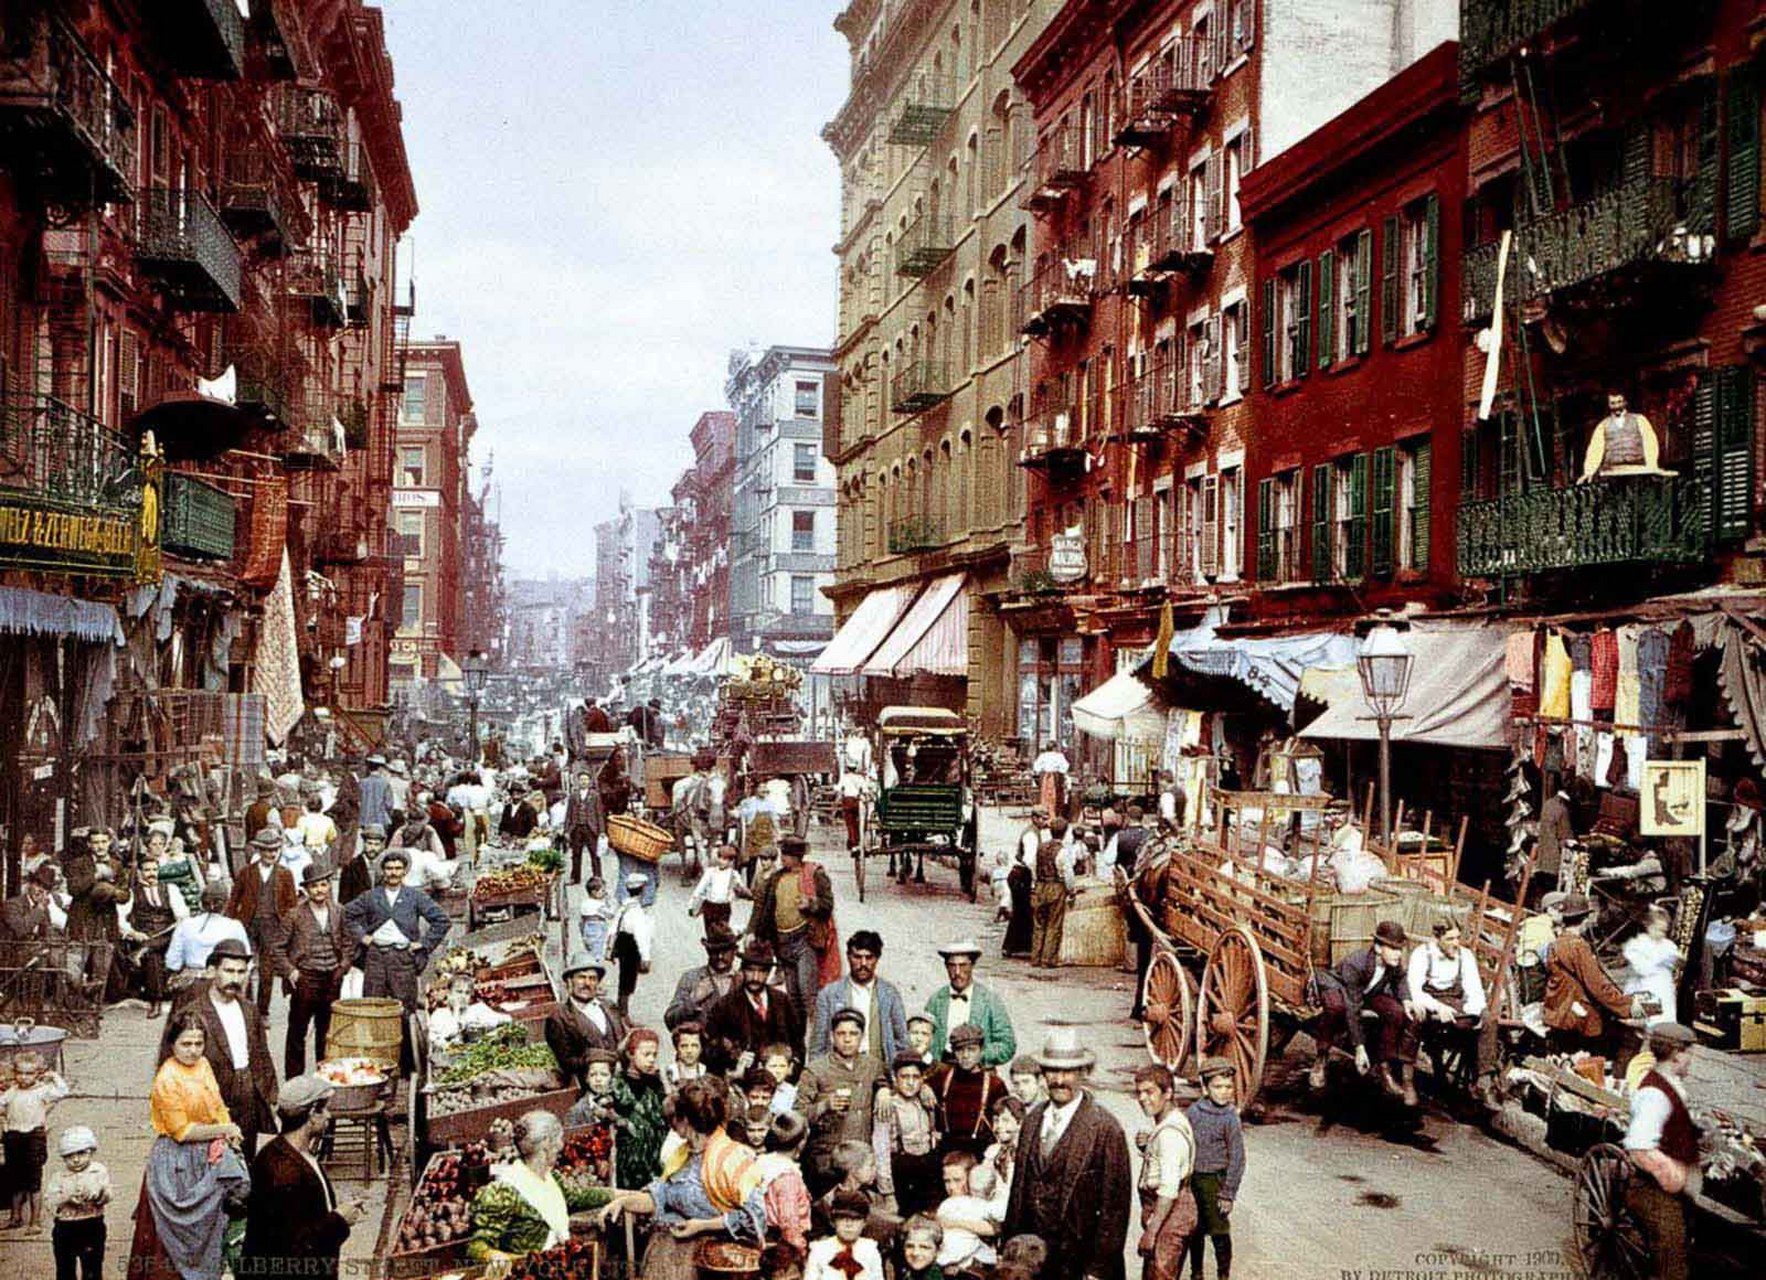 这篇文章介绍了一组100年前的美国纽约彩色老照片,这些照片展示了当时